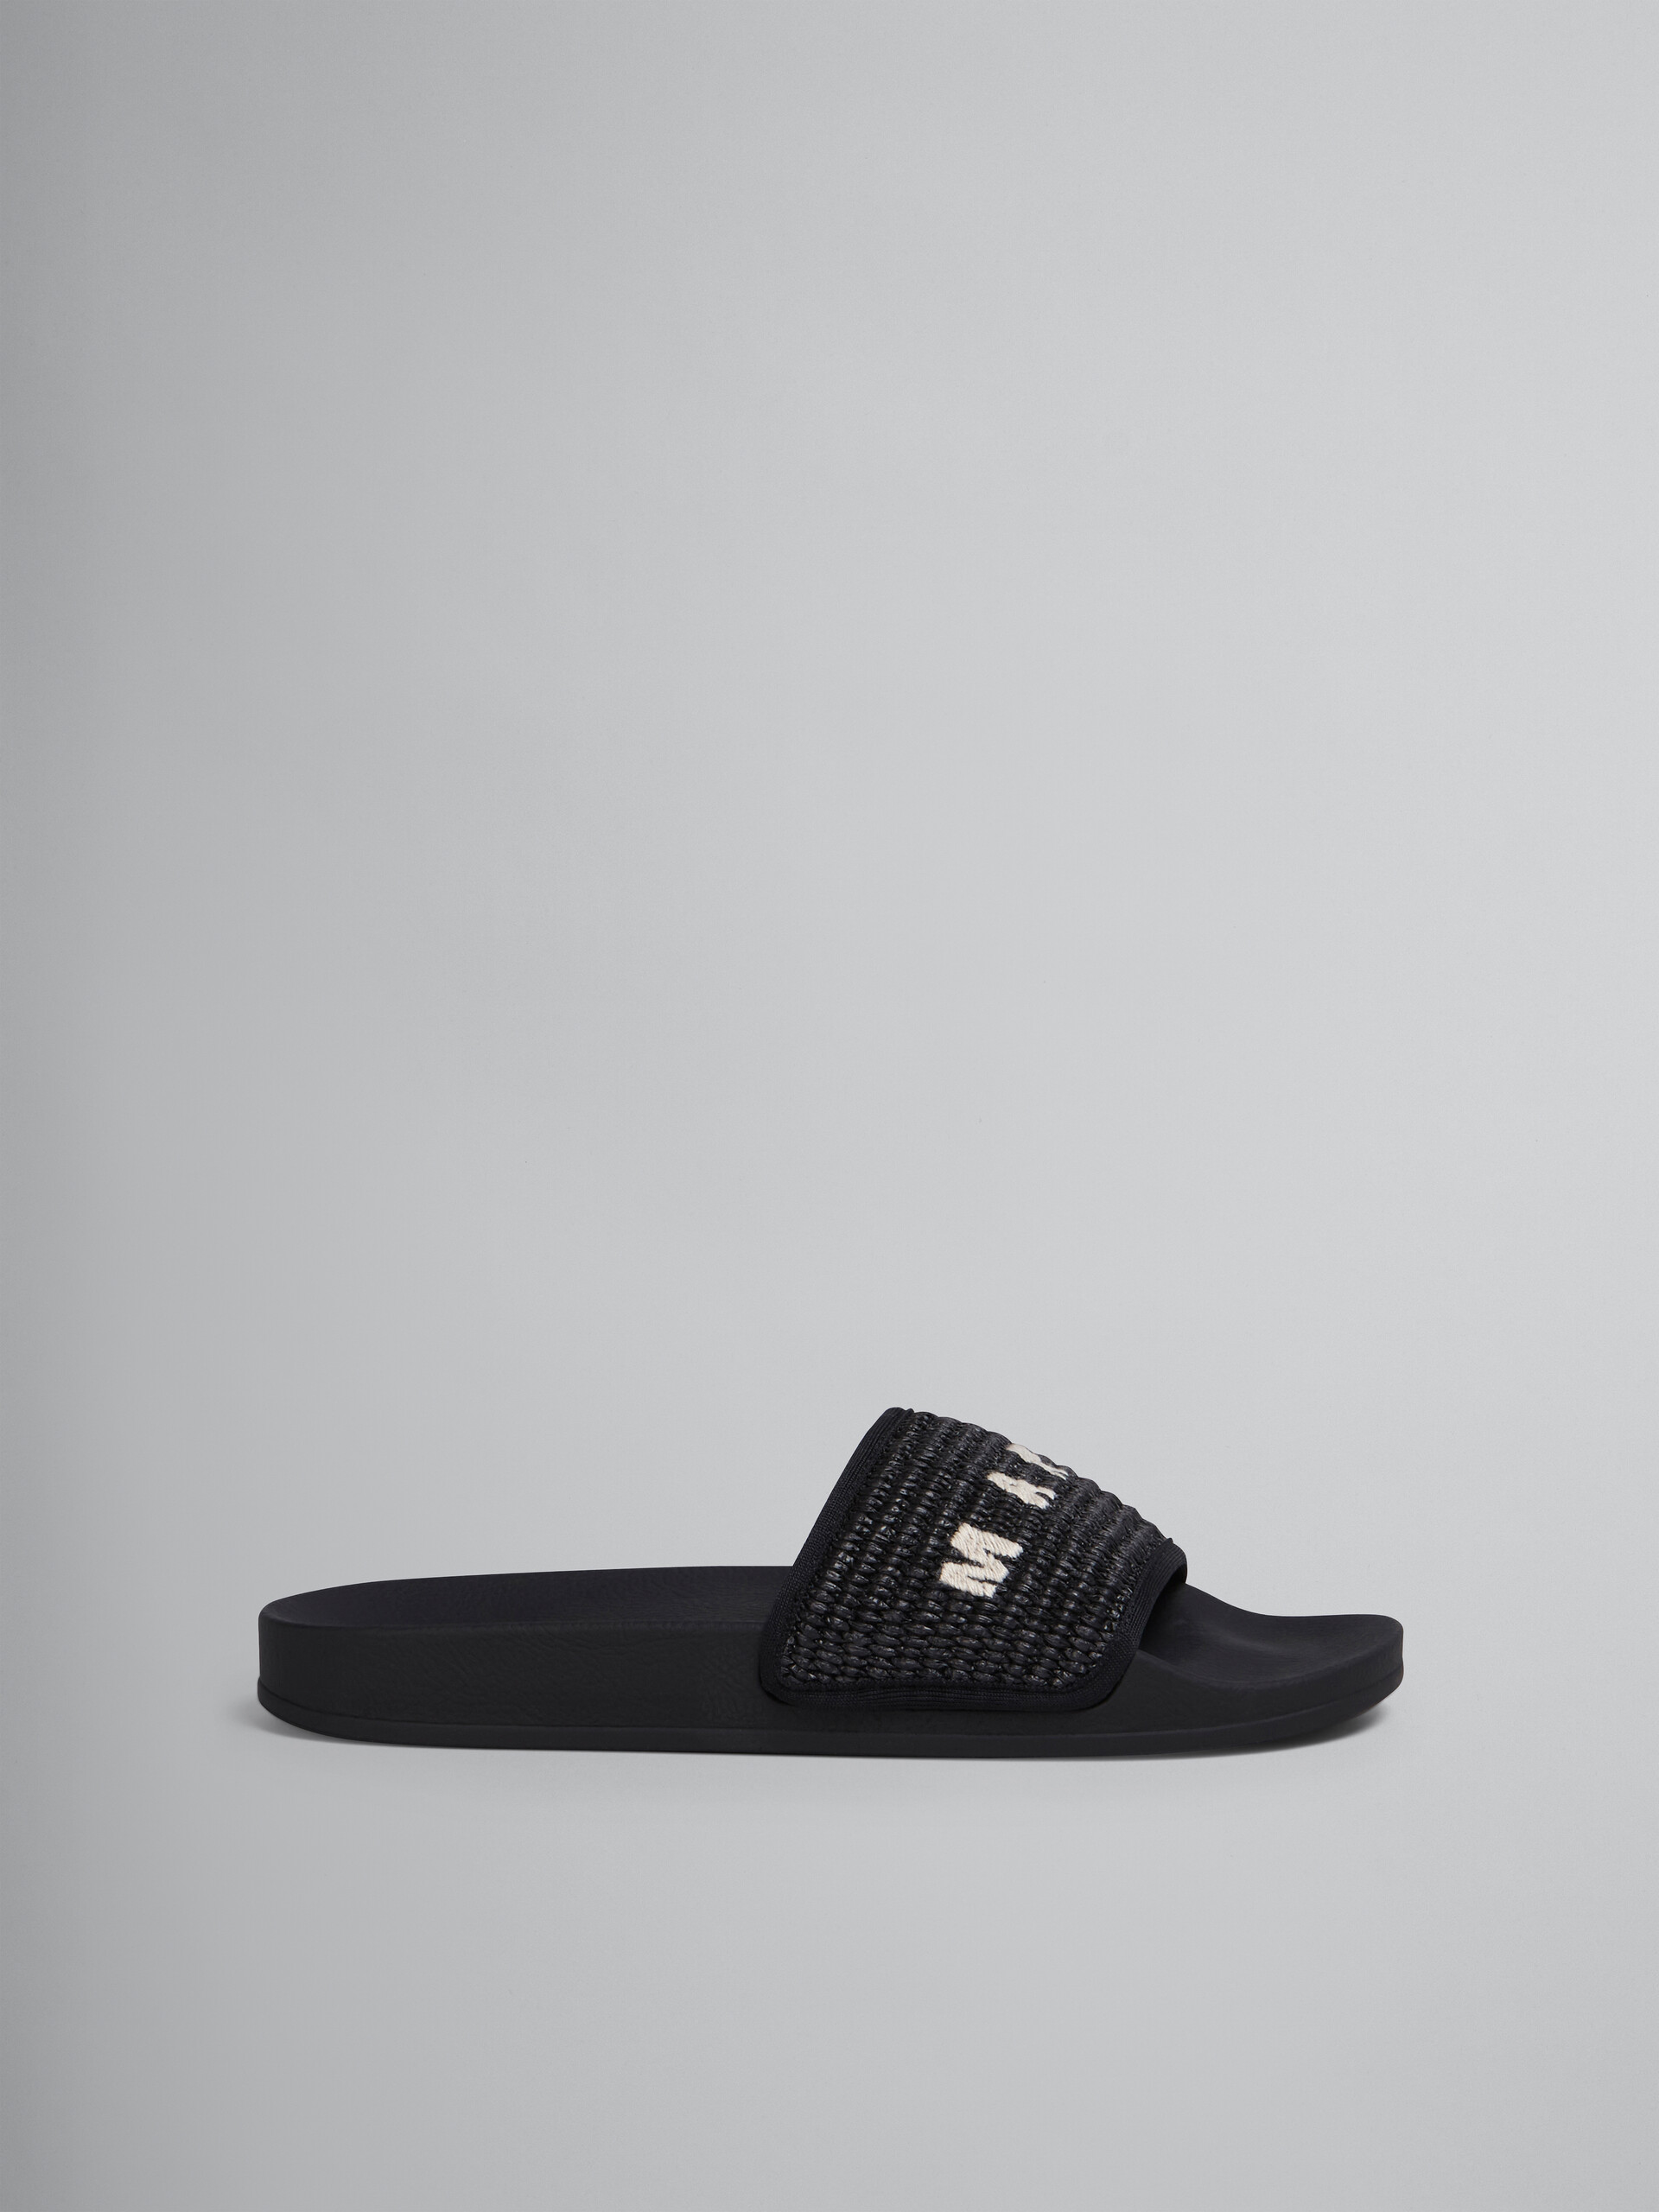 블랙 라피아 샌들 - Sandals - Image 1